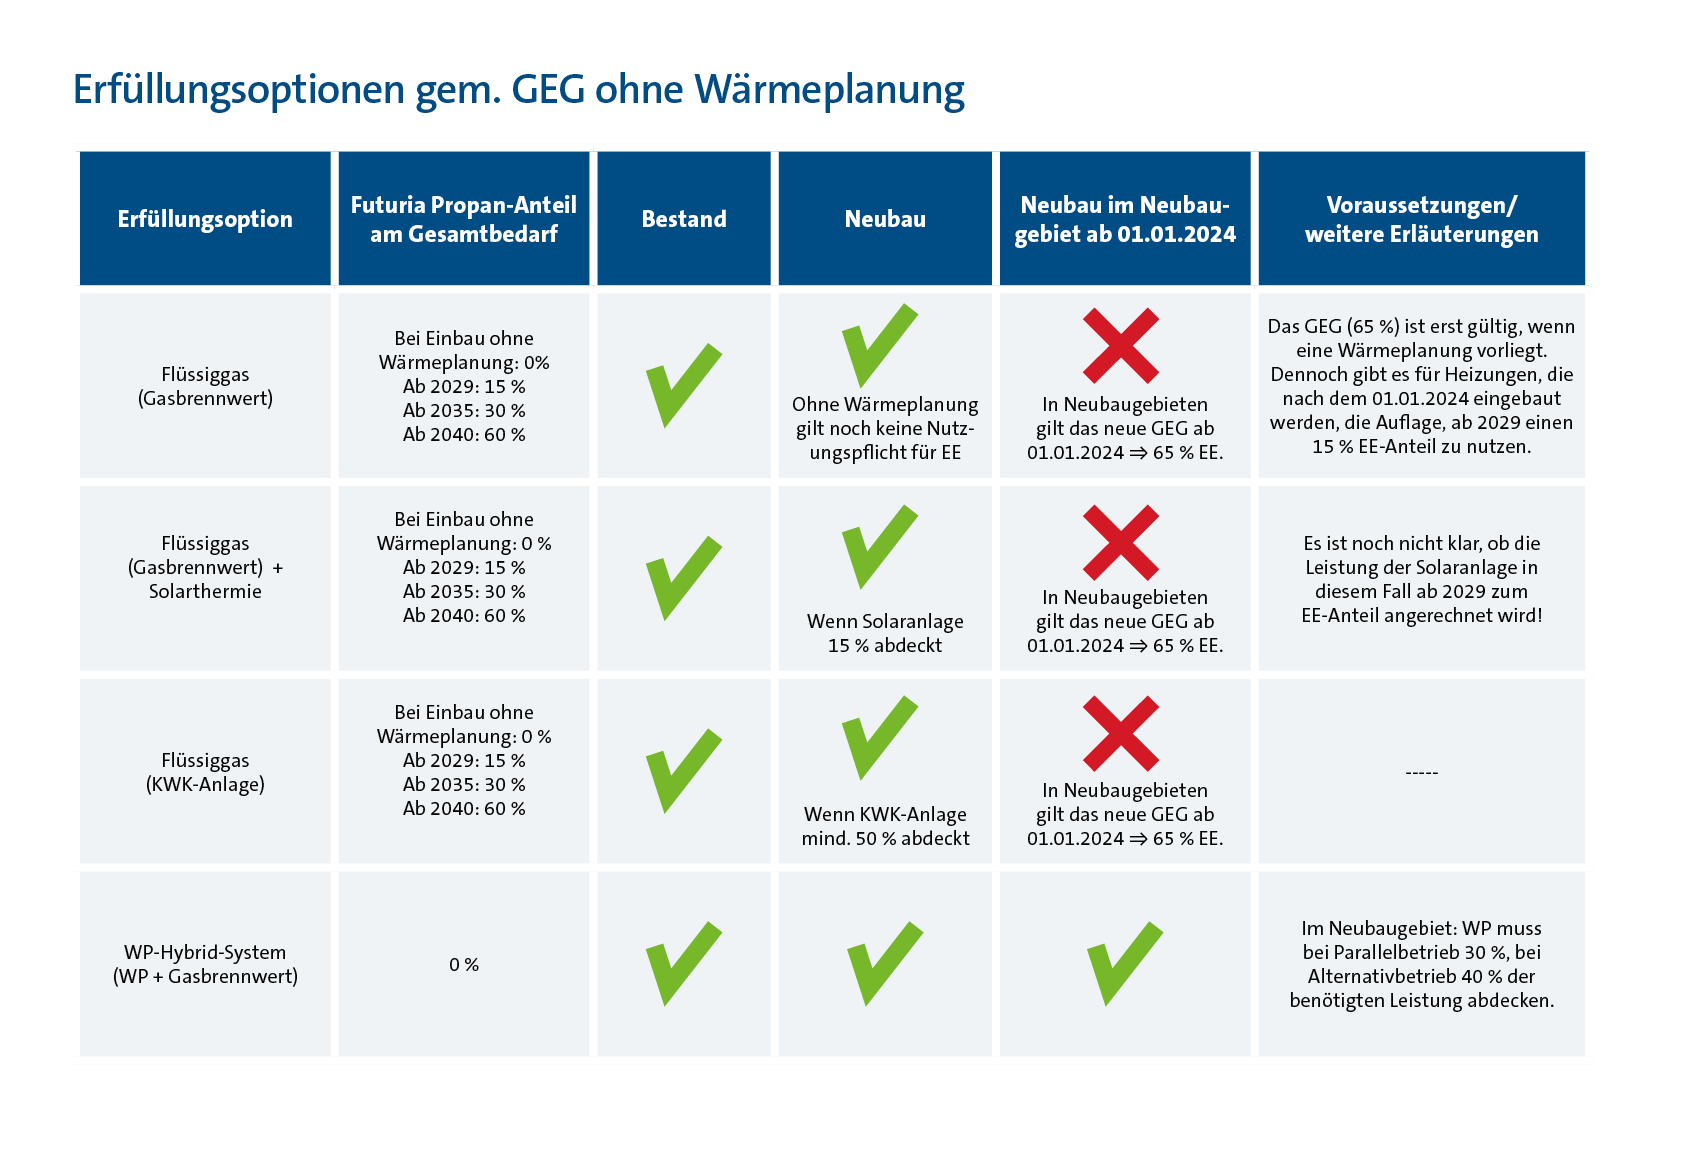 Tabelle, die alle Erfüllungsoptionen mit Flüssiggas für das GEG in Kommunen ohne Wärmeplanung zeigt. 